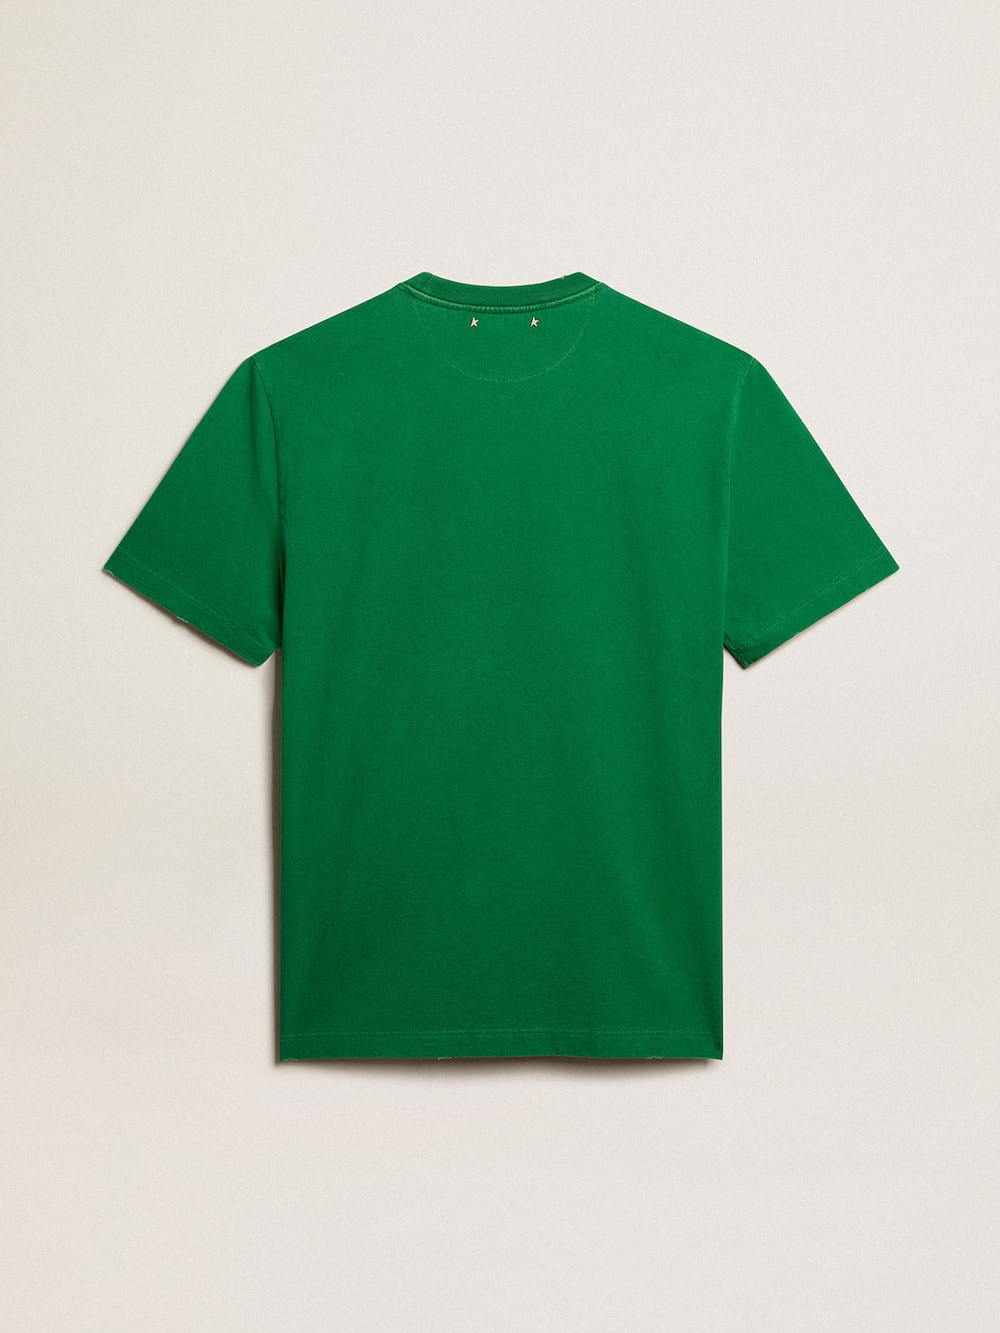 Golden Goose - Camiseta de hombre en algodón color verde con mensaje en el centro in 